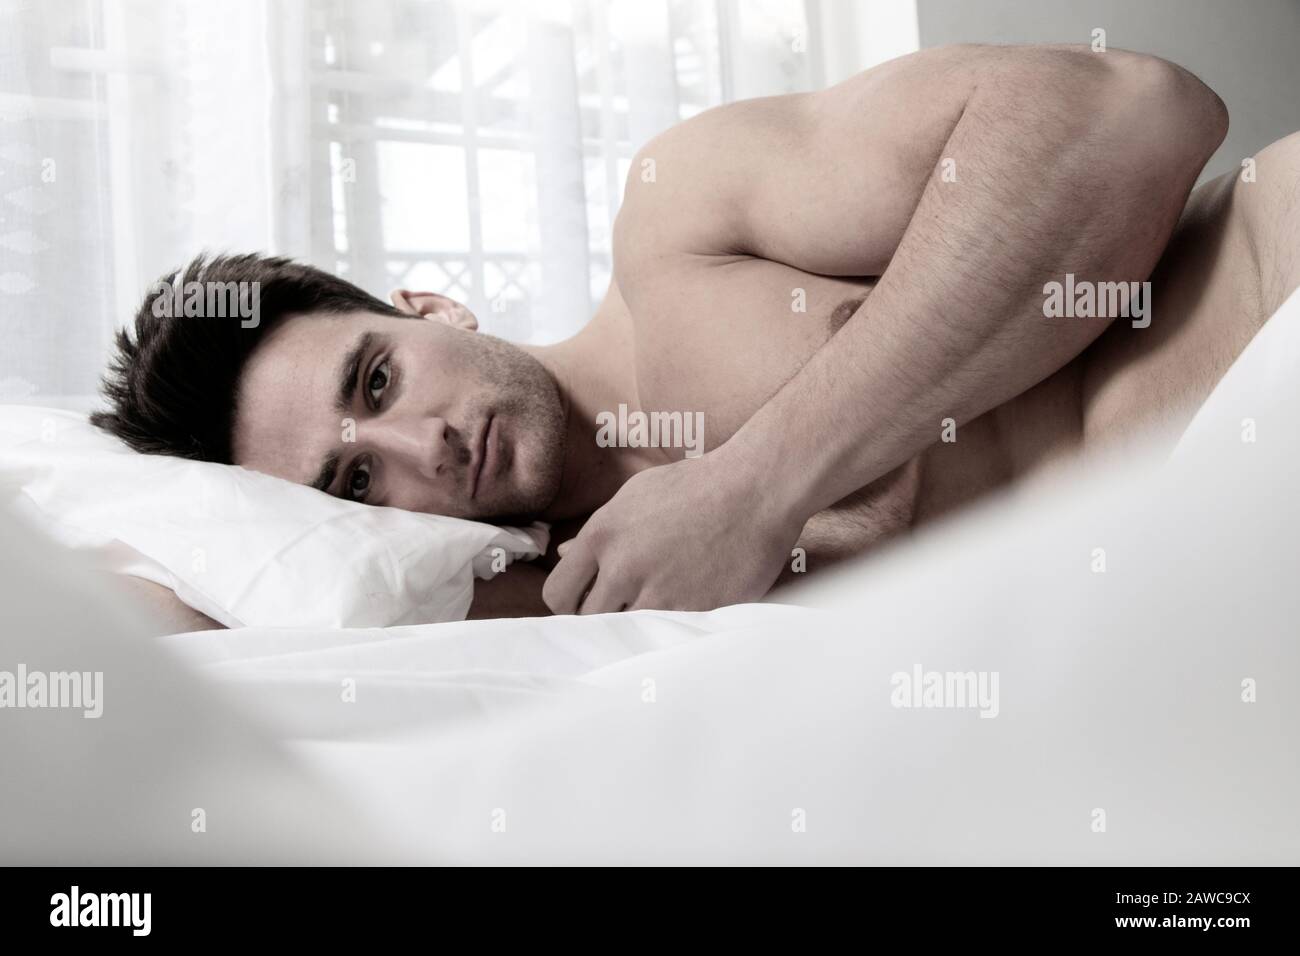 Homme musclé sexy et nu allongé dans un lit recouvert d'une feuille,  regardant l'appareil photo Photo Stock - Alamy